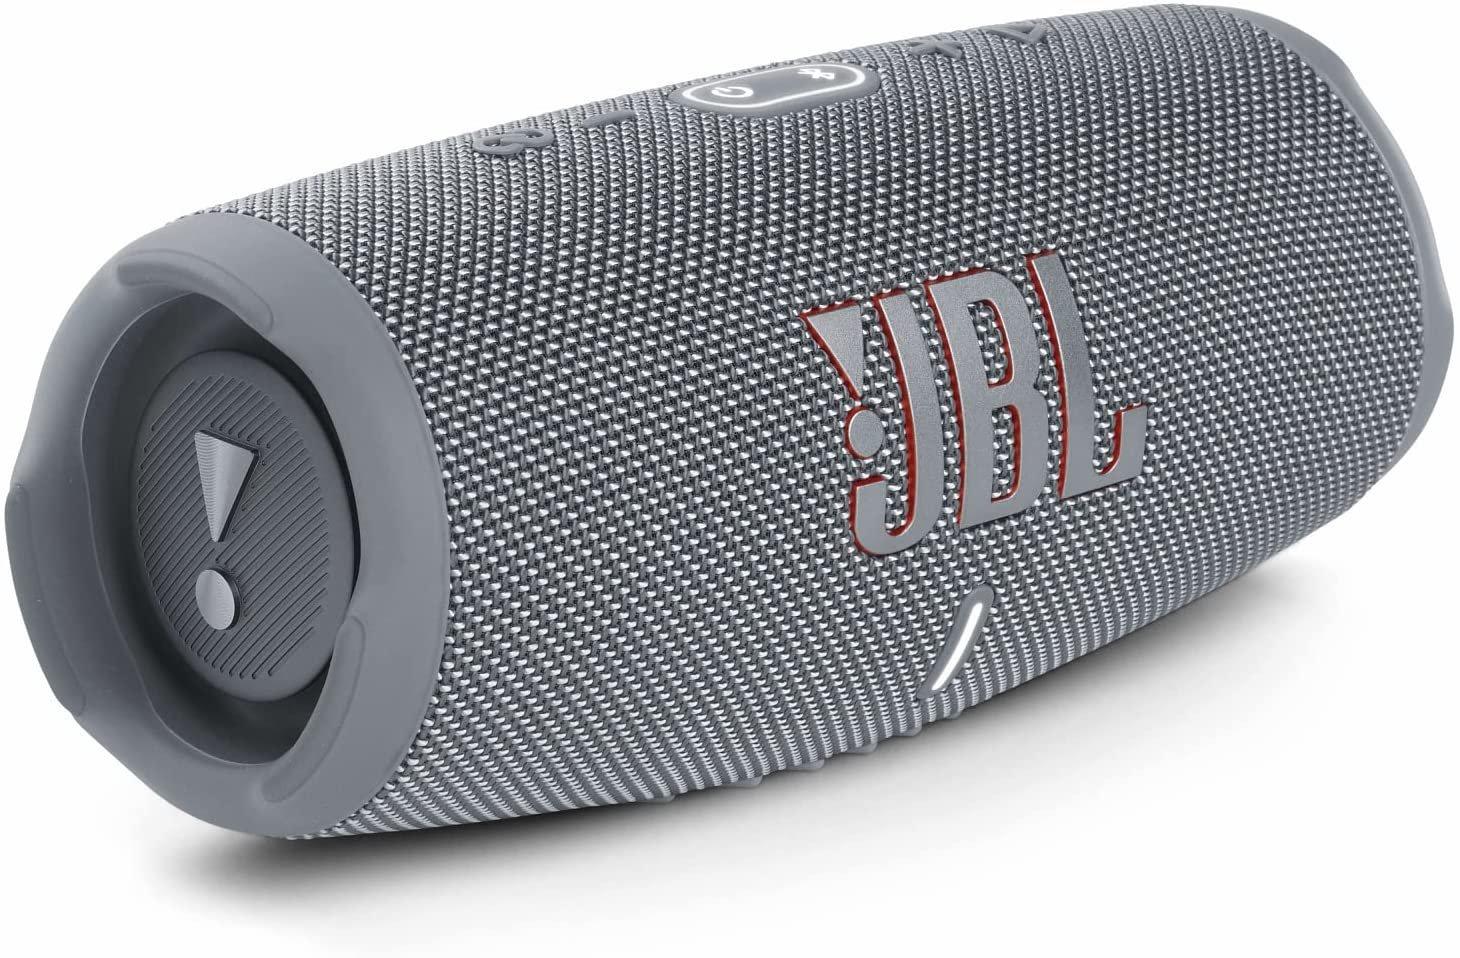 JBL  JBL Charge 5 Tragbarer Bluetooth-Lautsprecher Grau 